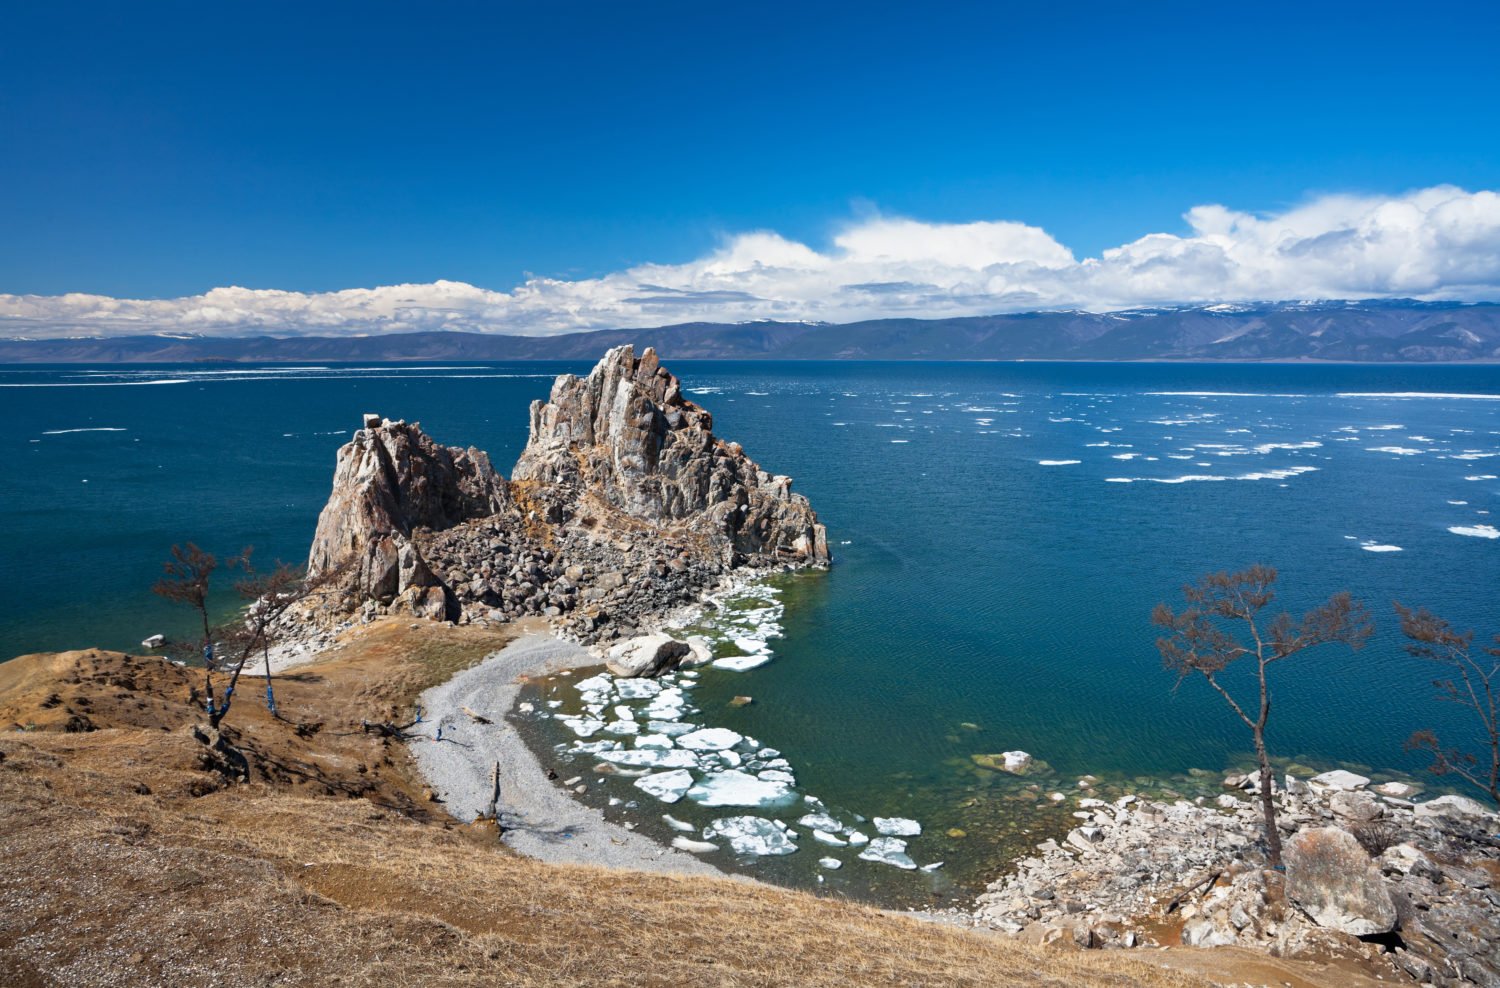 Озеро байкал знают во всем мире. Остров Ольтрек на Байкале. Озеро Байкал остров Ольхон. Мыс Бурхан скала Шаманка. Остров Ольхон на Байкале достопримечательности.